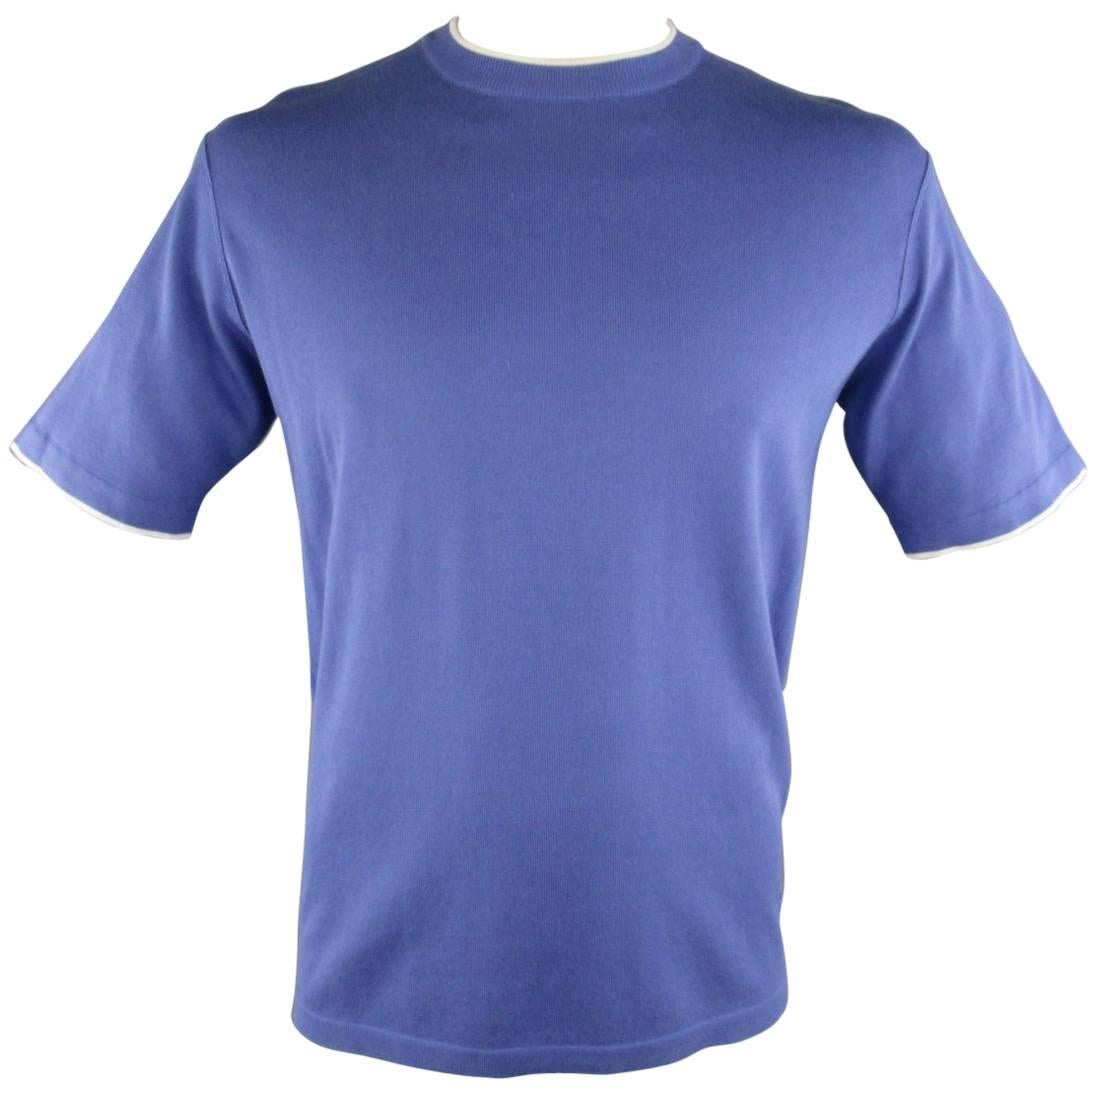 Men's BRIONI Size L Blue Cotton Pique Knit White Striped Bands T-shirt